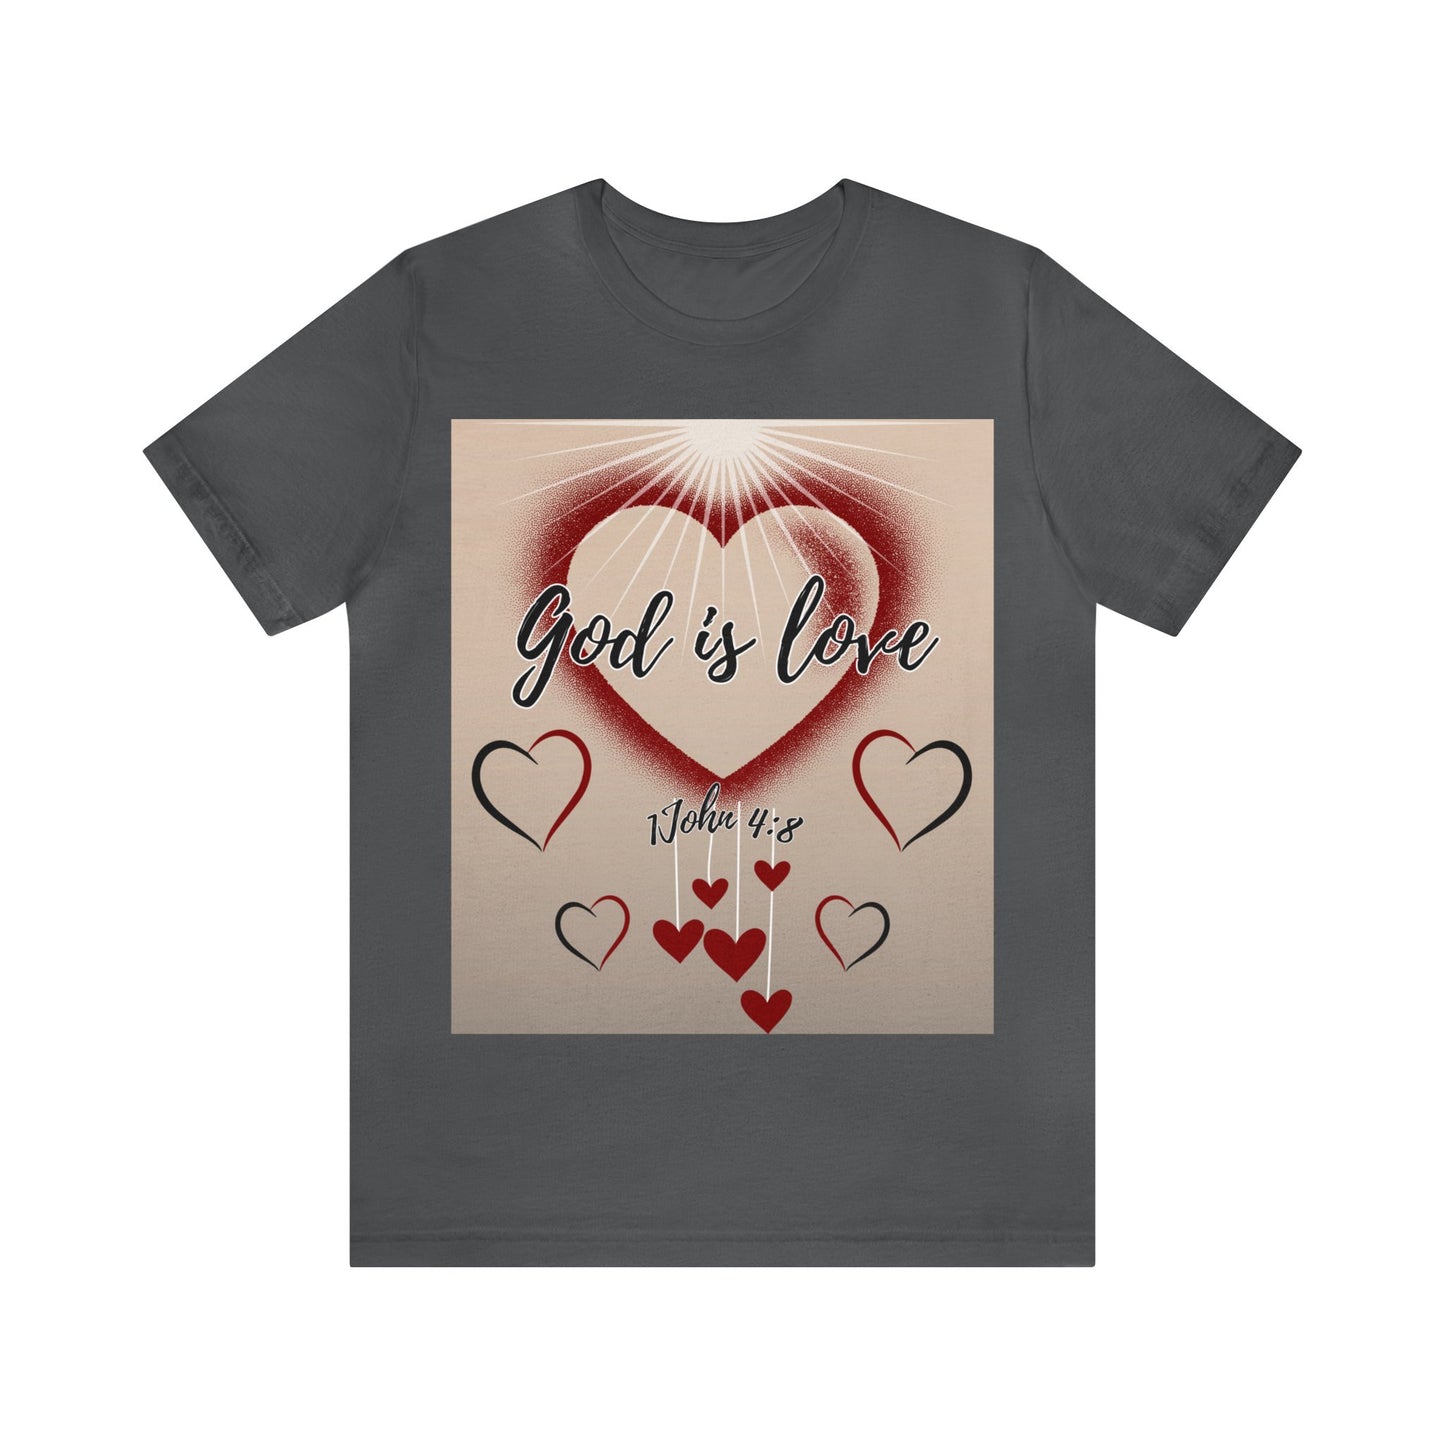 God Is Love! Women's T-Shirt (Unisex Fit)